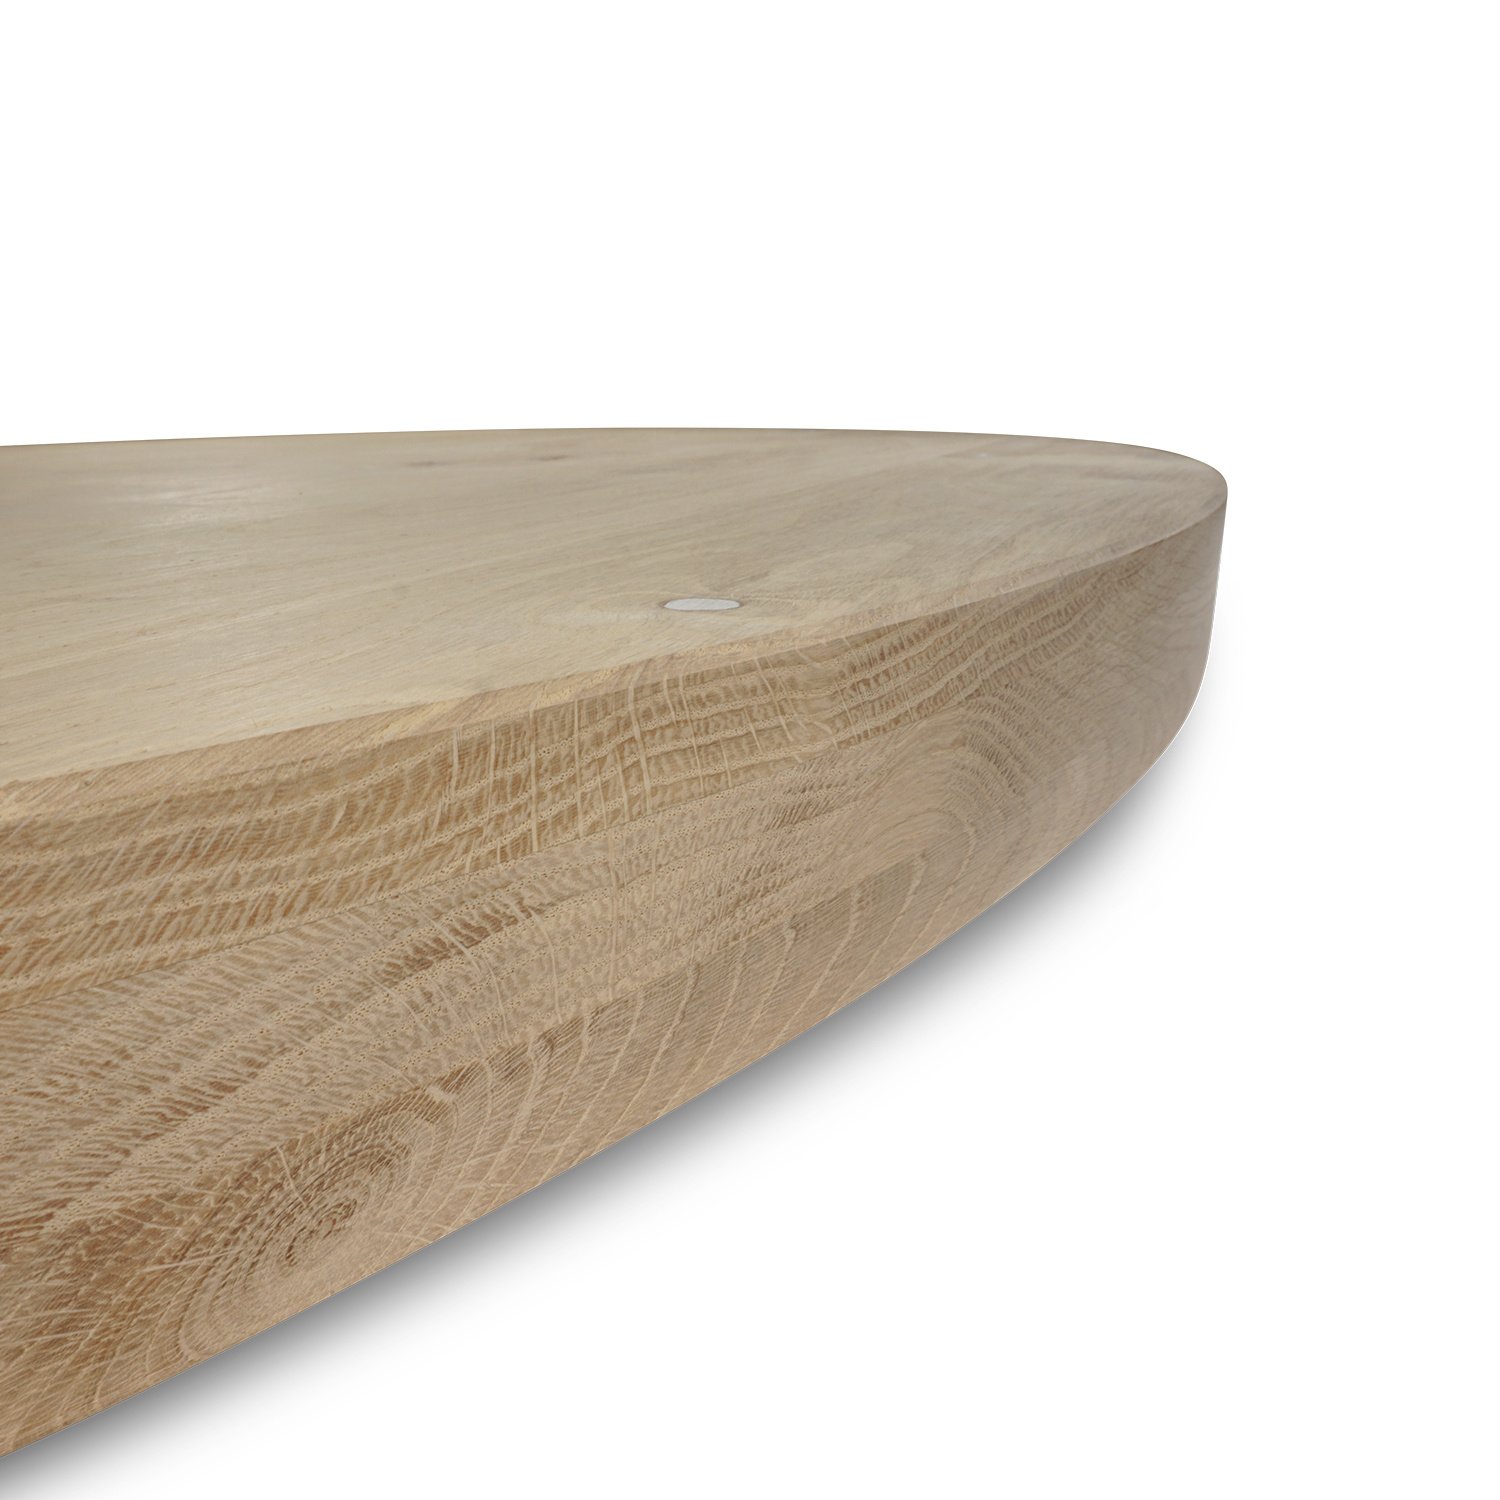  Tischplatte Eiche rund nach Maß - 6 cm dick (3-lagig) - Eichenholz rustikal - Durchmesser: 30 - 180 cm - Eiche Tischplatte rund - aufgedoppelt - verleimt & künstlich getrocknet (HF 8-12%)